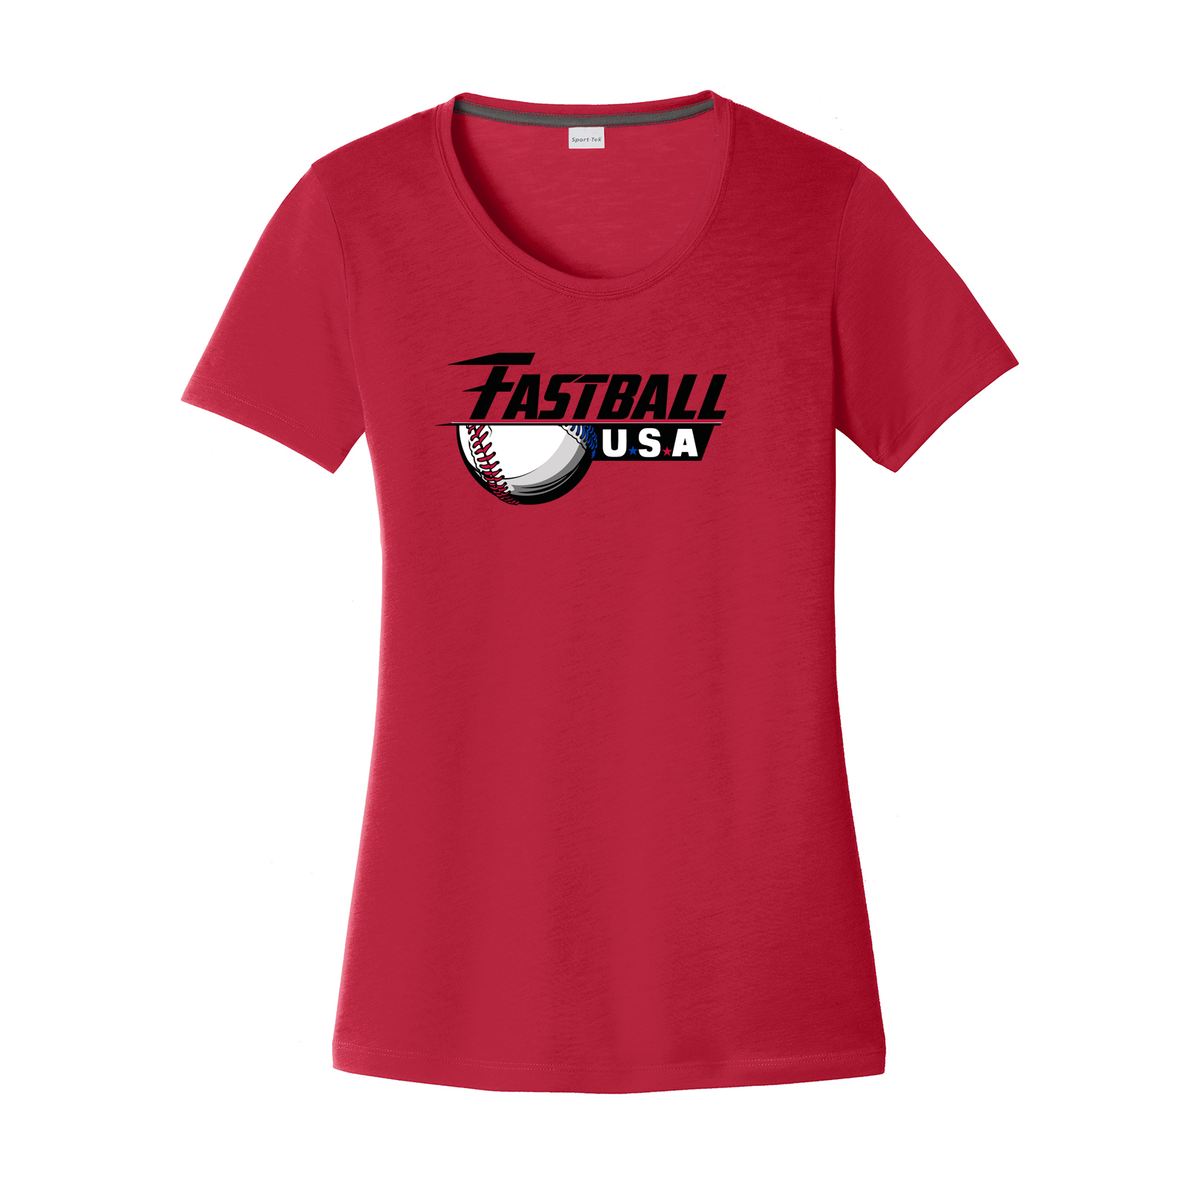 Fastball USA Academy Baseball Women's CottonTouch Performance T-Shirt